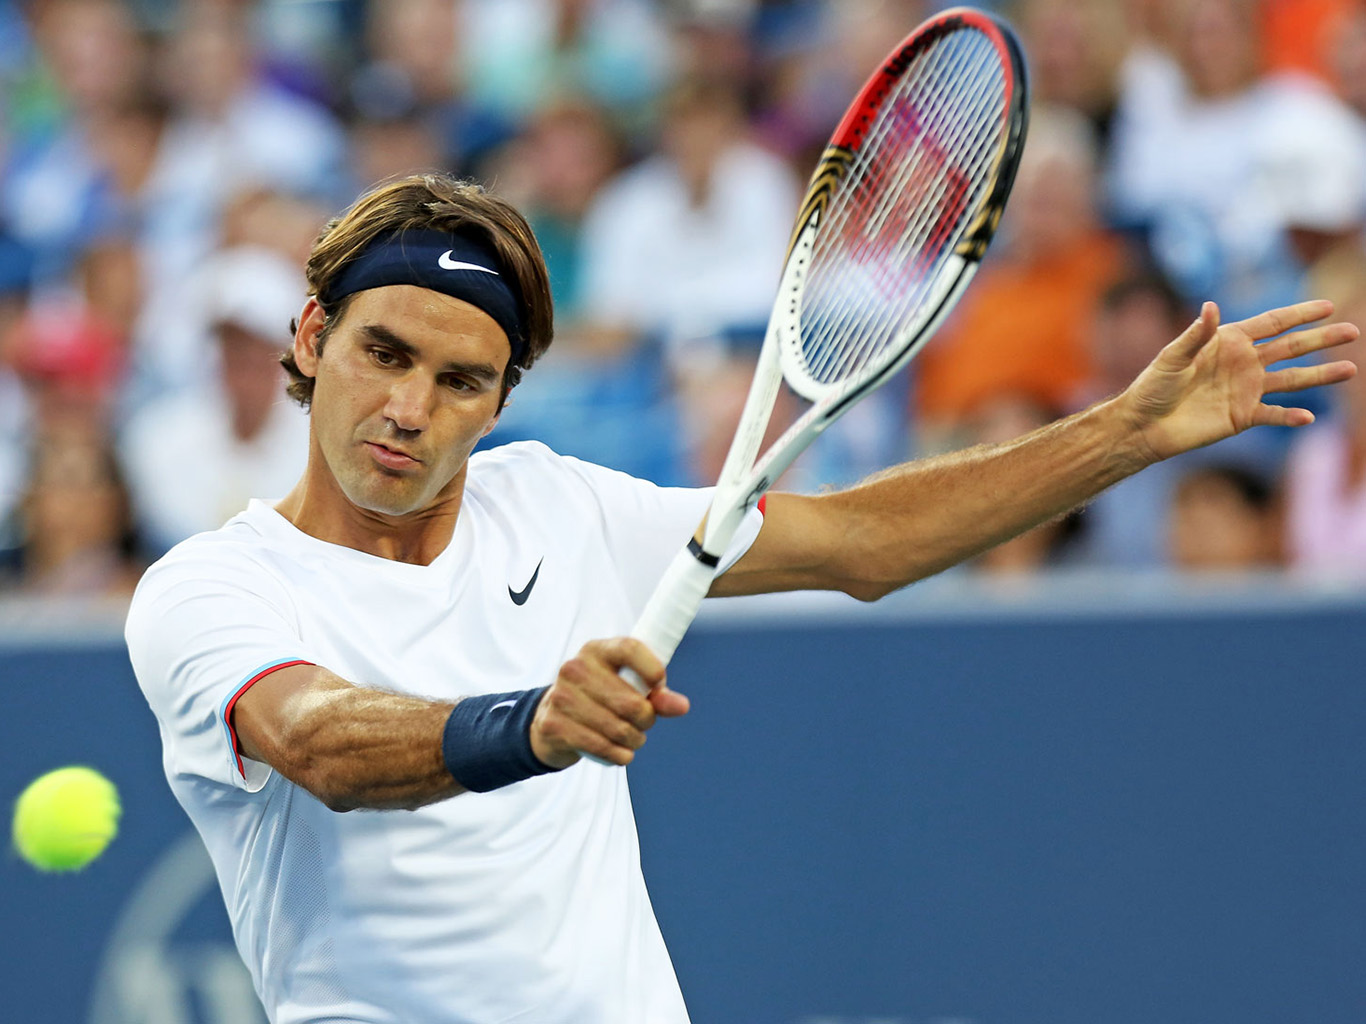 Švýcar Roger Federer bývá označován za nejlepšího hráče historie tenisu